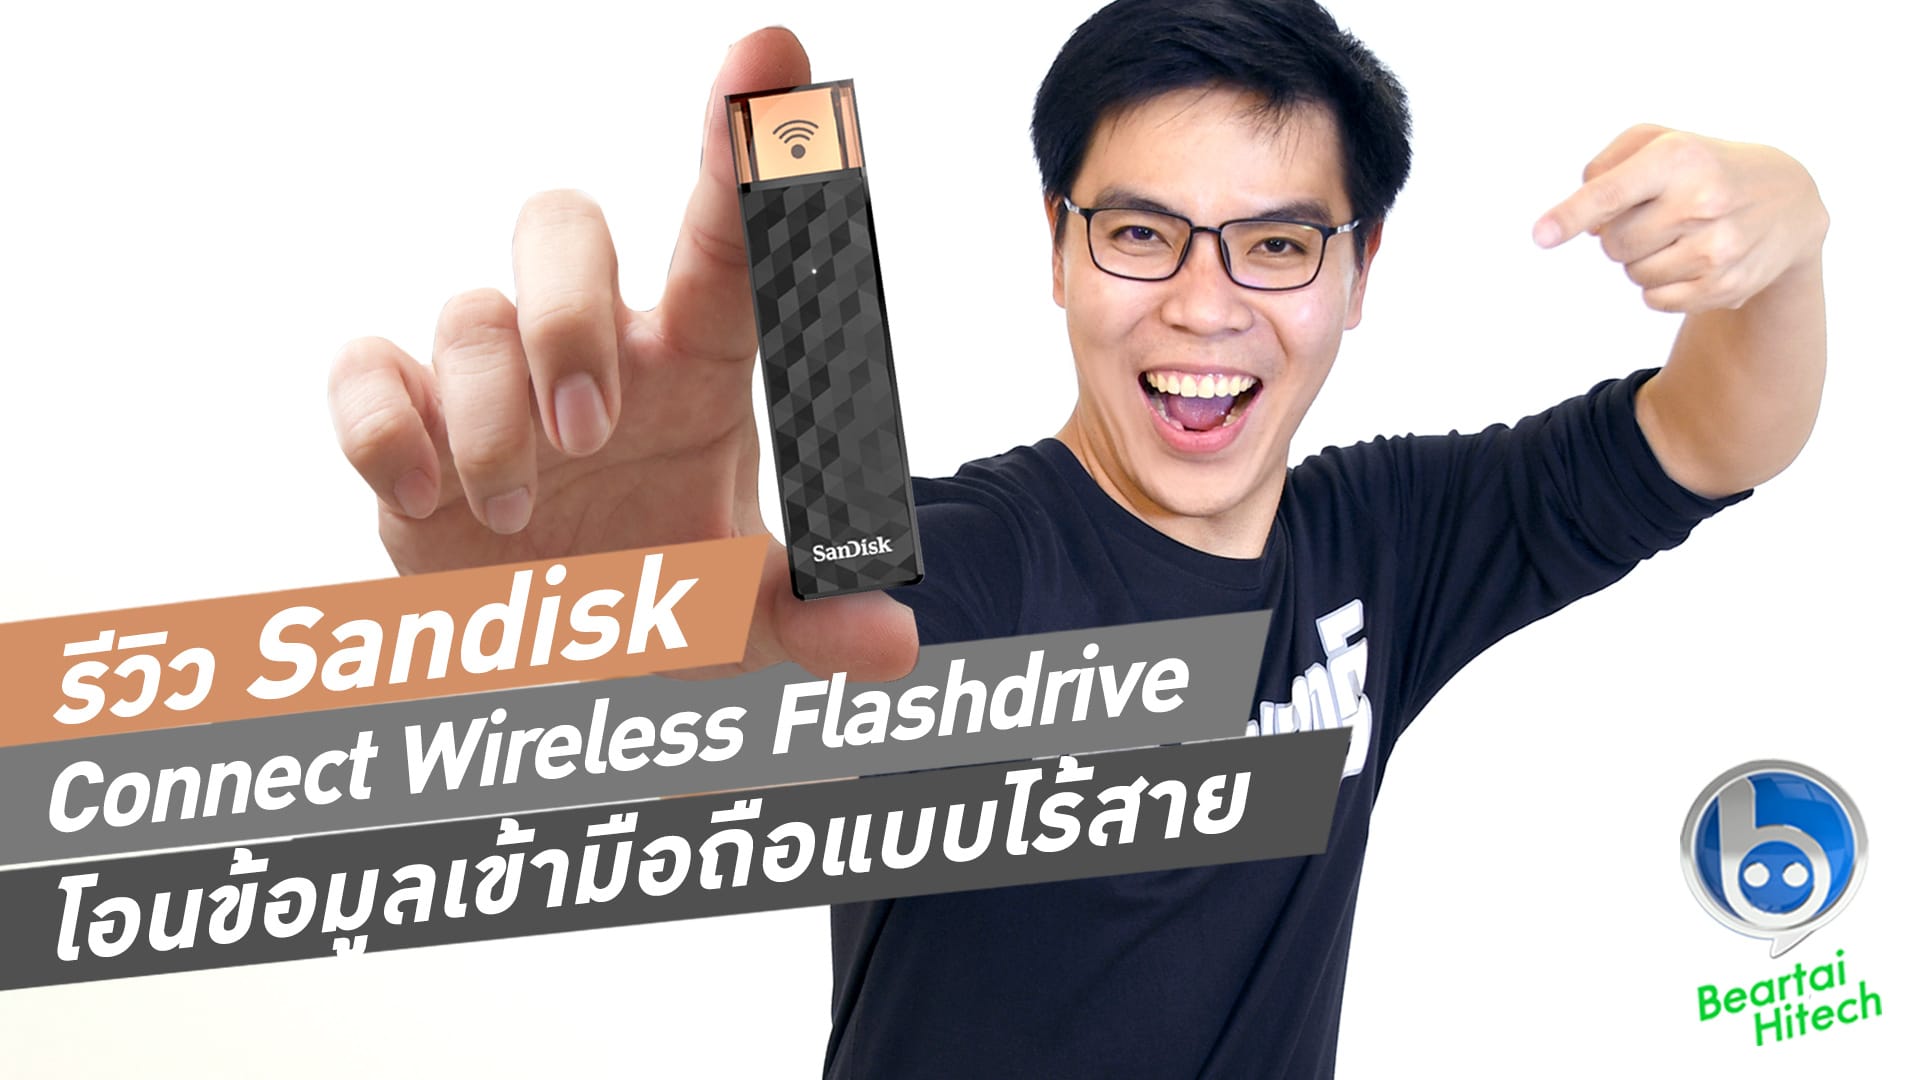 รีวิว Sandisk Connect Wireless Flashdrive โอนข้อมูลเข้า iOS, Android แบบไร้สาย!